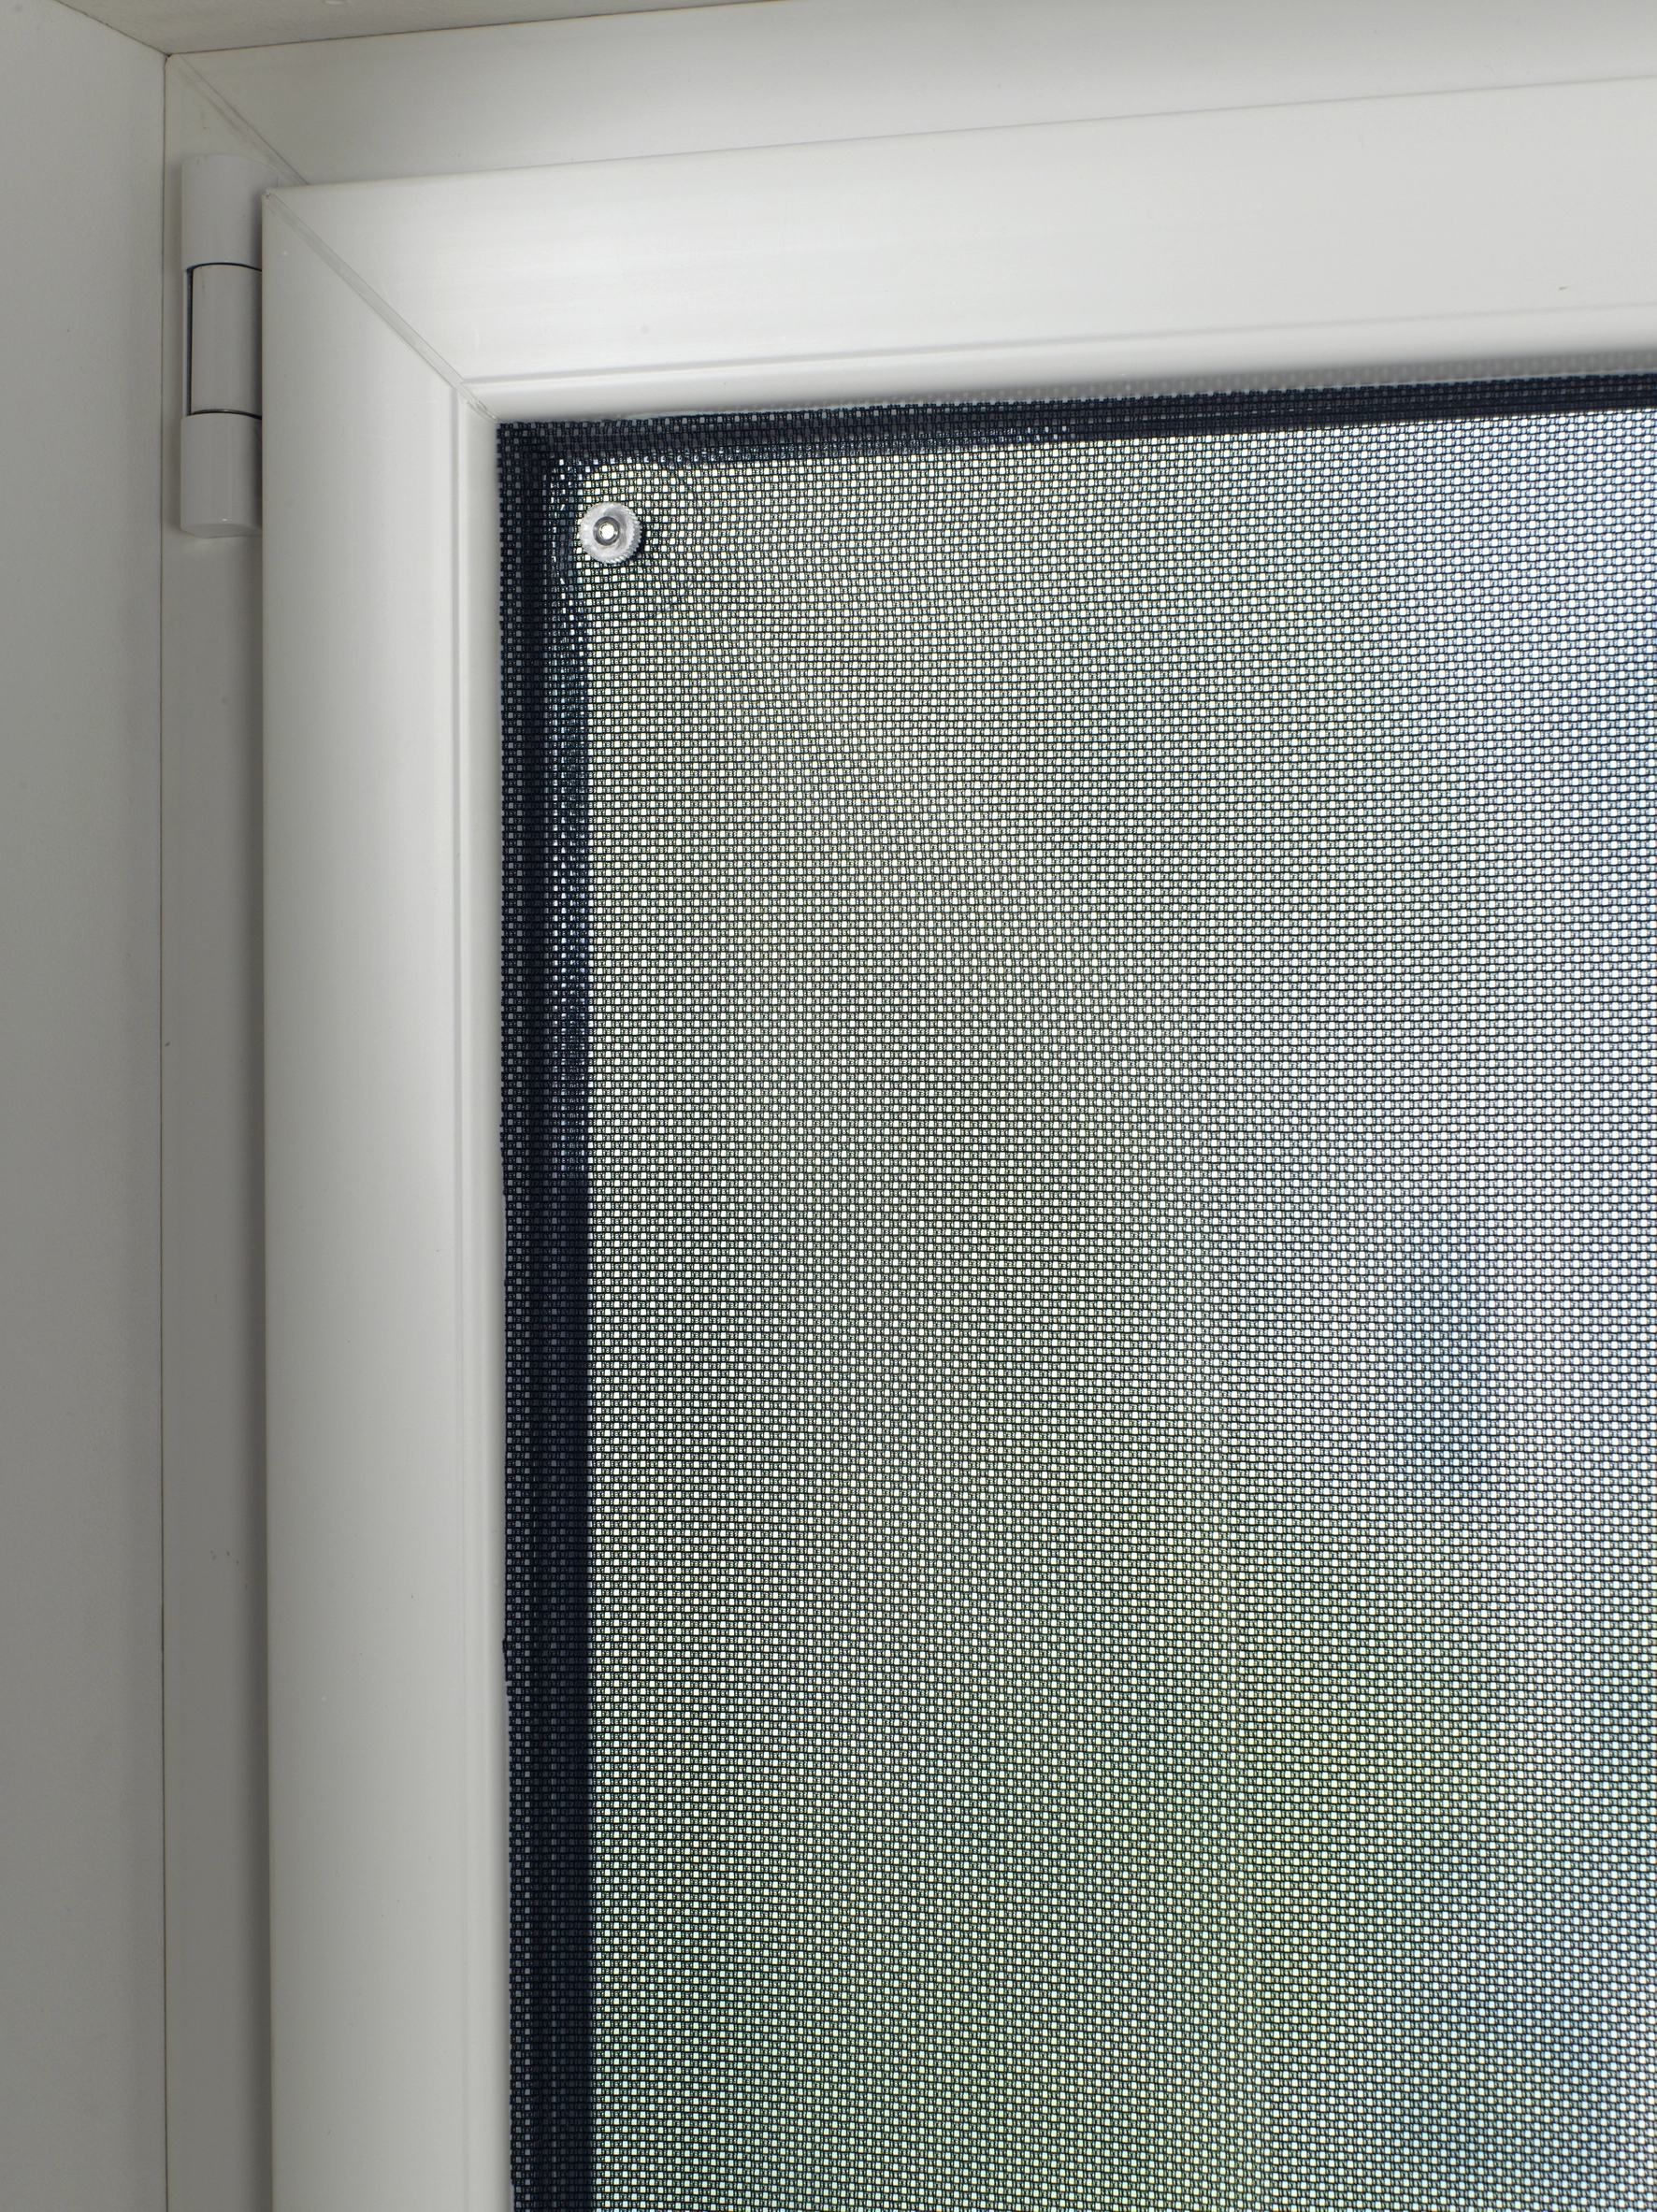 4 x Fenster Verdunkelung, mit Saugnäpfen, 60 x 100 cm